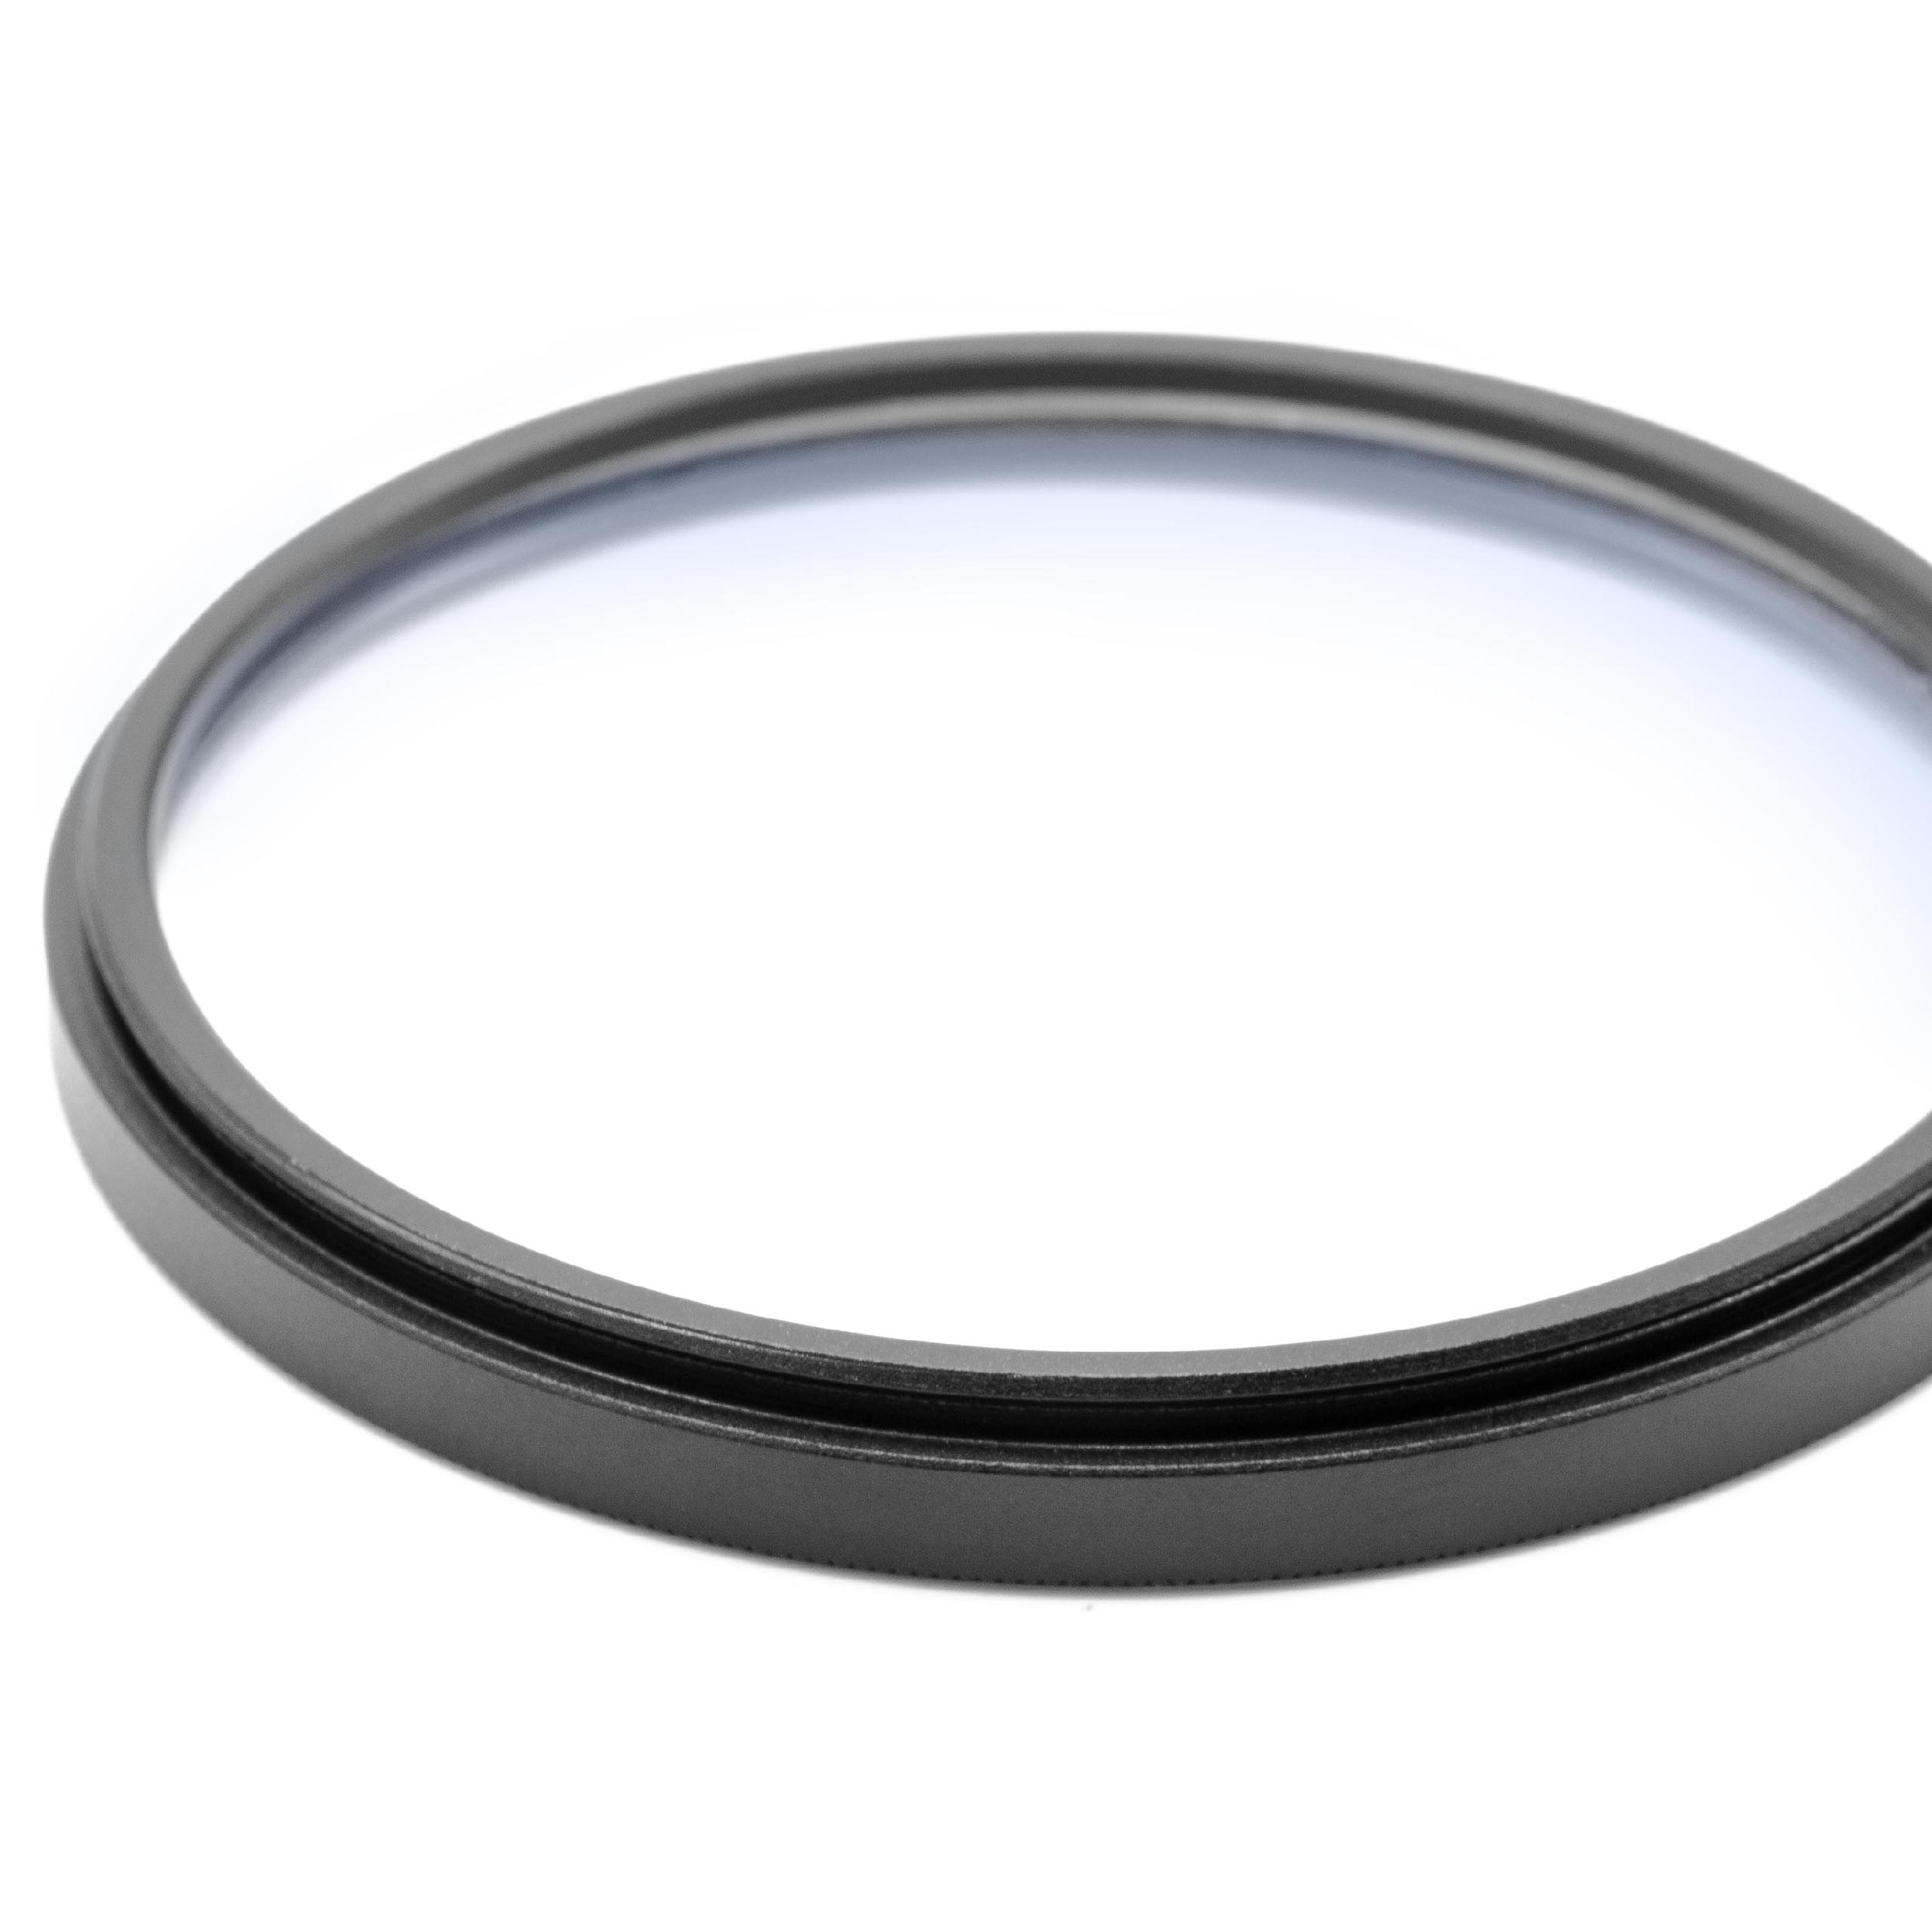 Filtre soft pour objectif d'appareil photo de diamètre 62 mm - Filtre doux